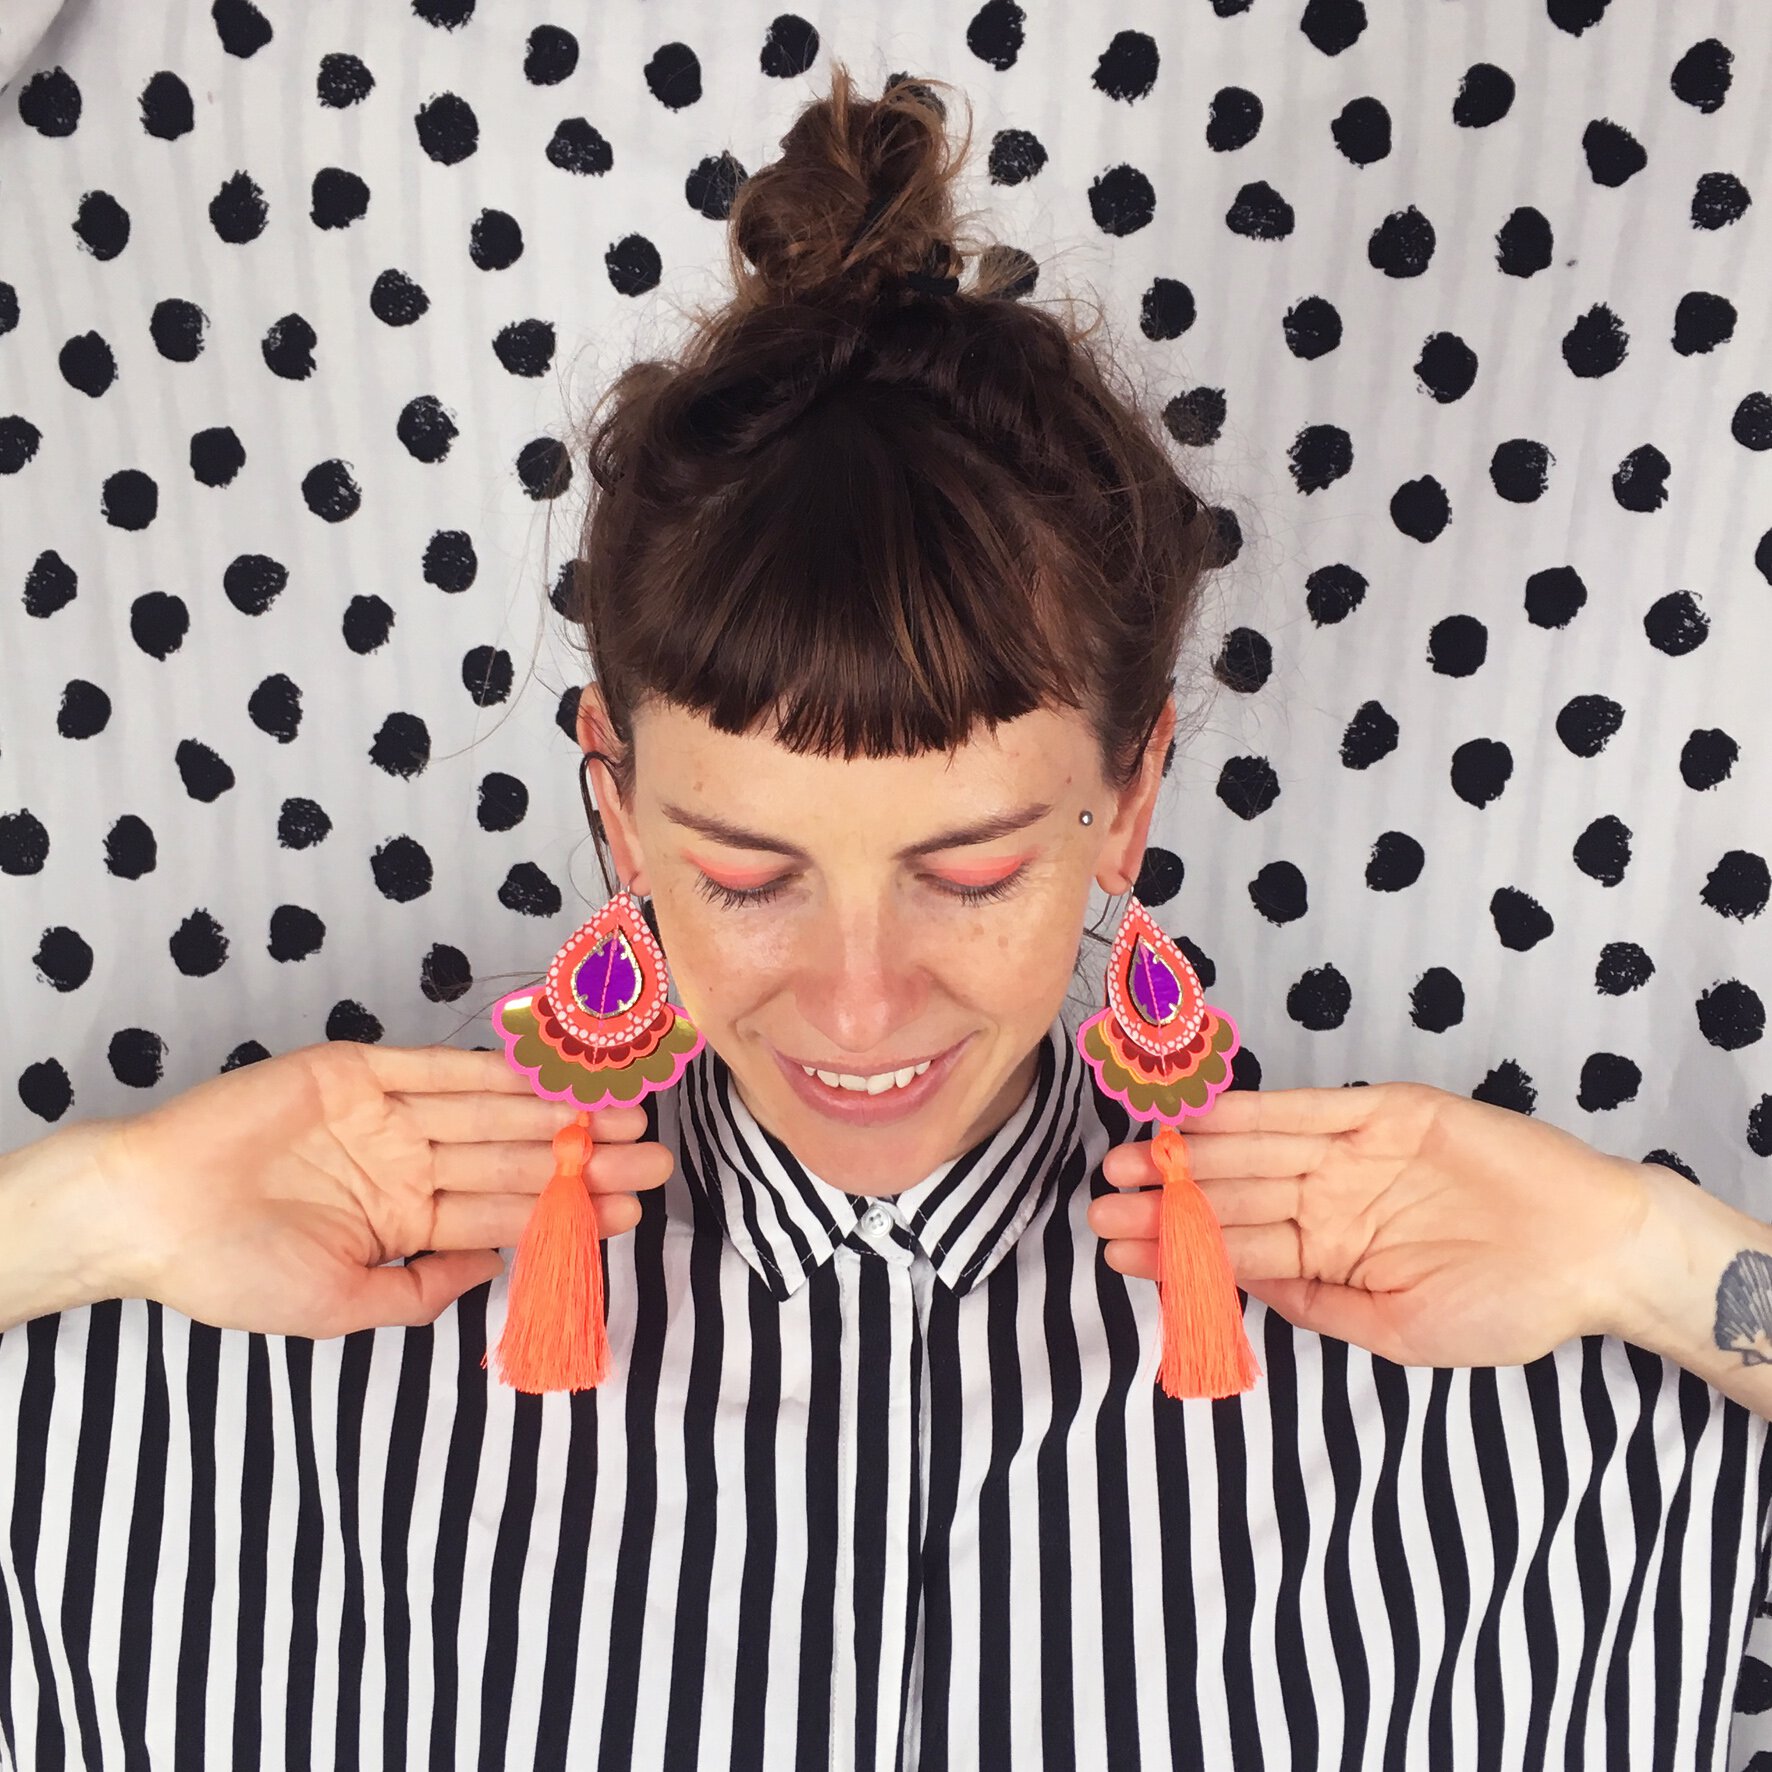 dakota rae dust designer bec wears a black and white stripey shirt and fluorescent orange tassel earrings against a polka dot patterned backdrop